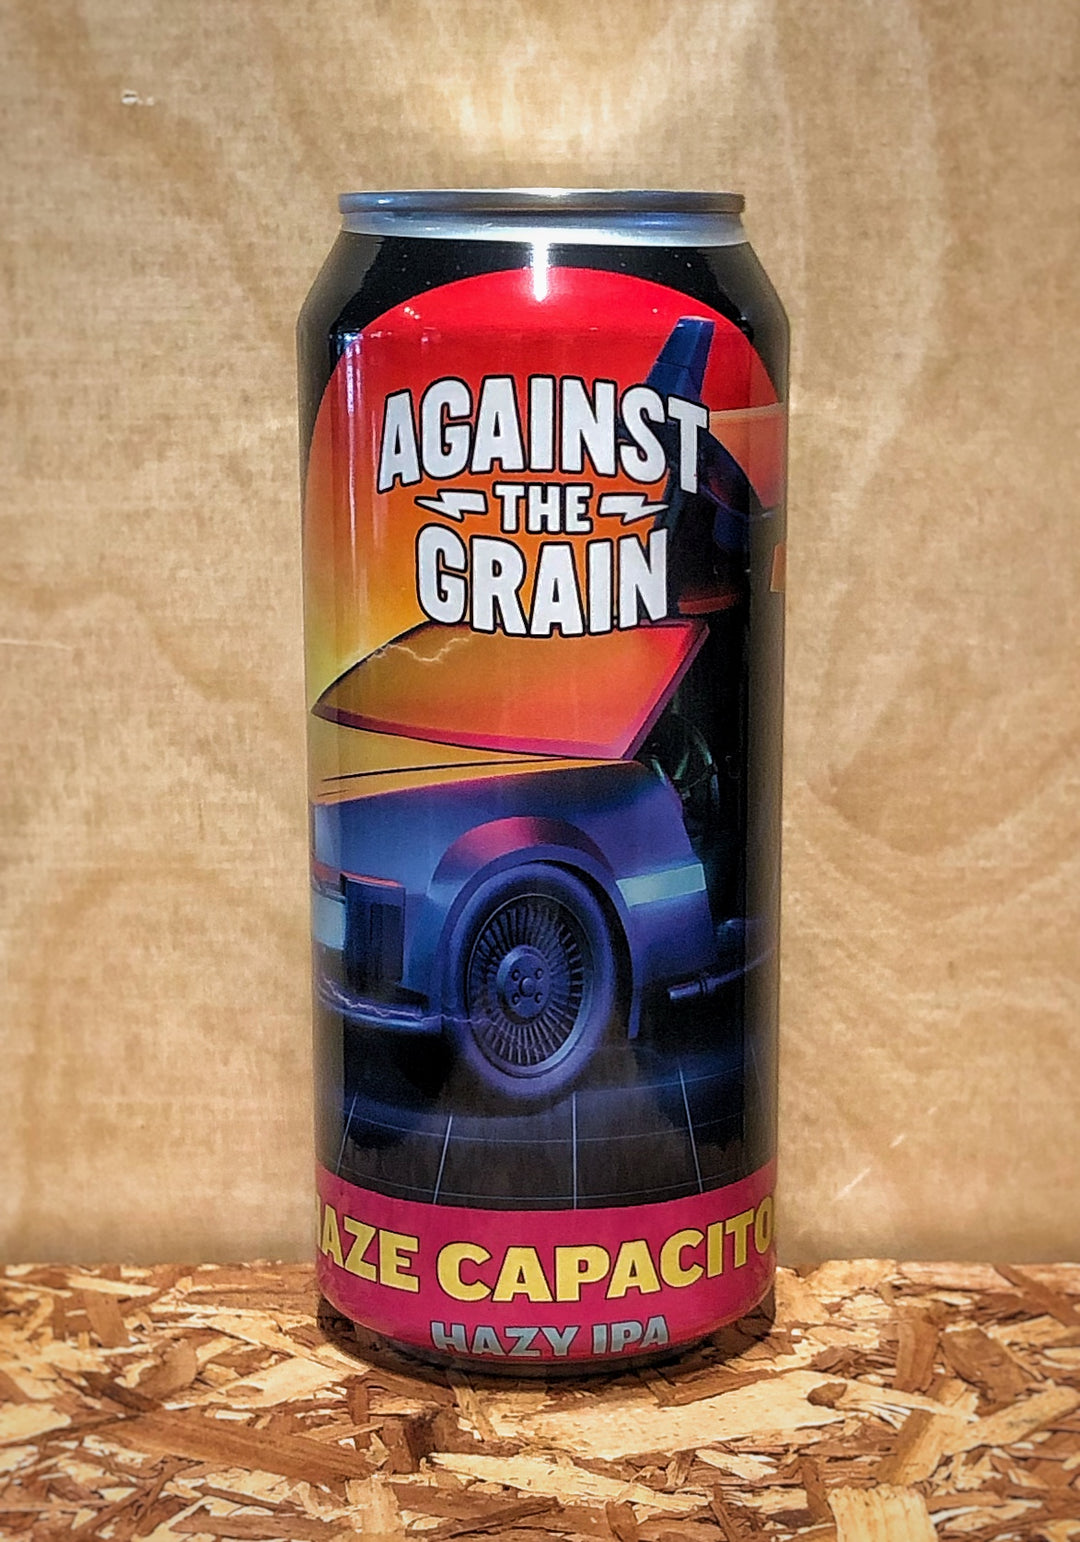 Againt The Grain 'Haze Capacitor' Hazy IPA (Louisville, KY)